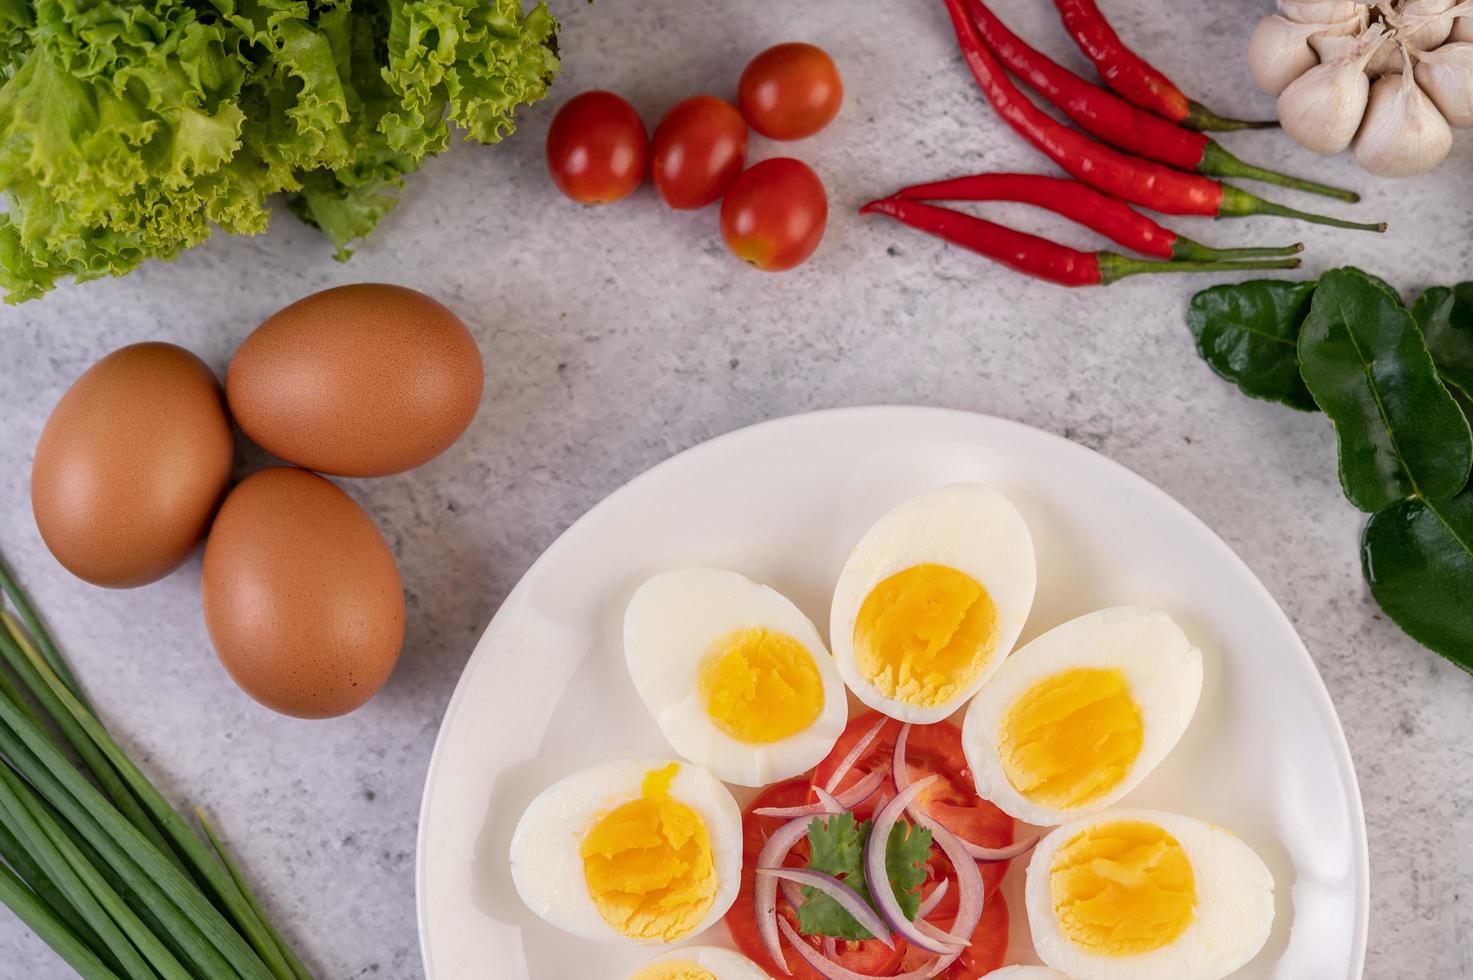 ovos meio cozidos com tomate e cebolinha foto